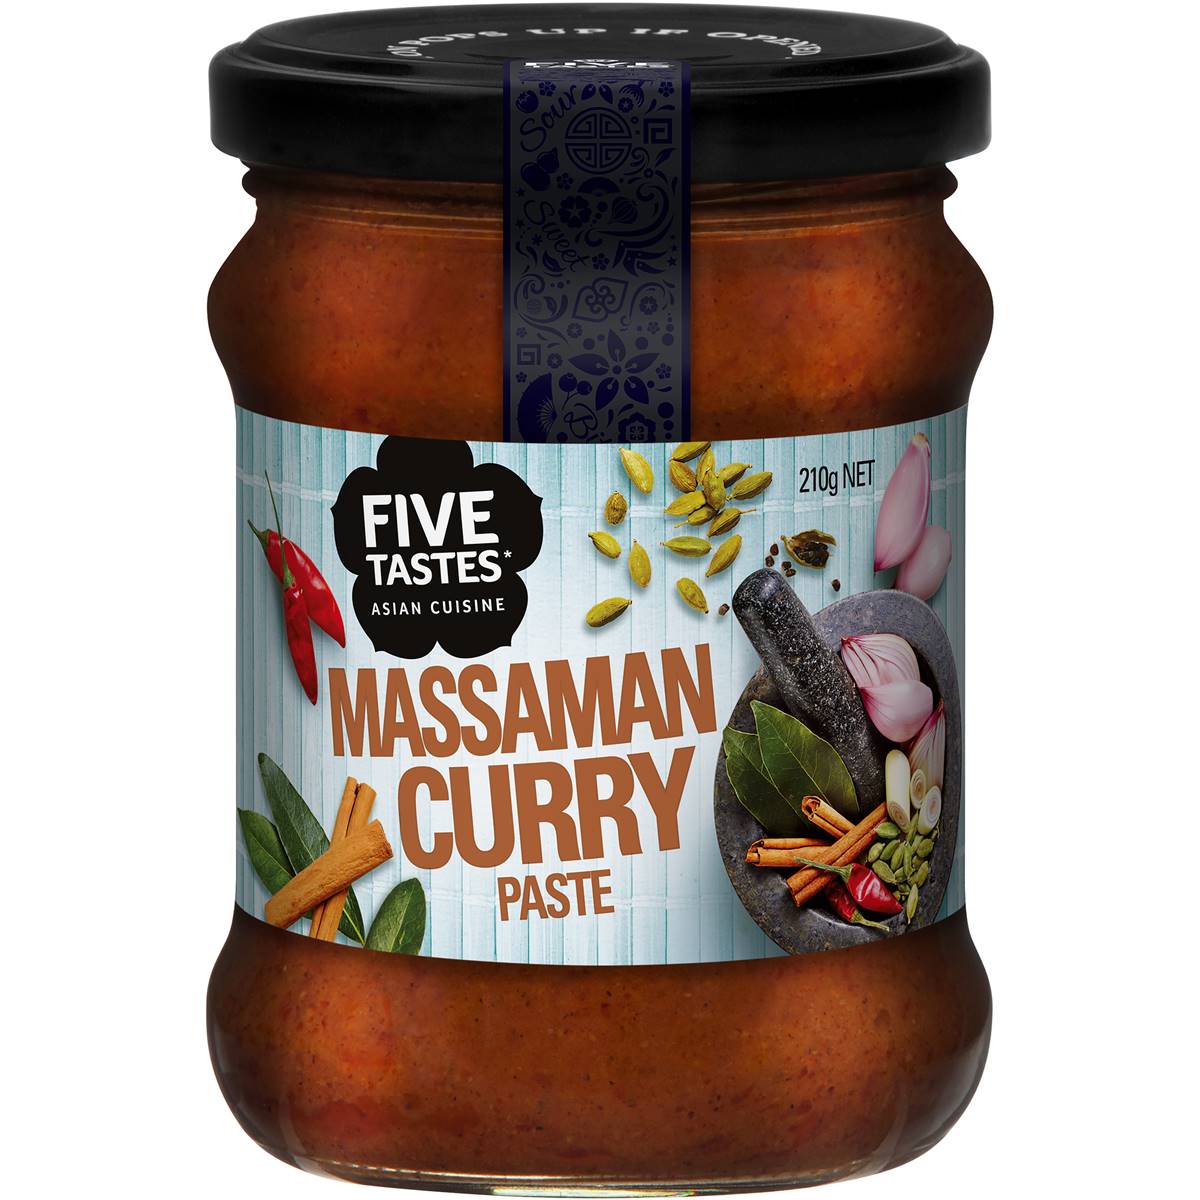 Five Tastes Massaman Curry Paste 210g